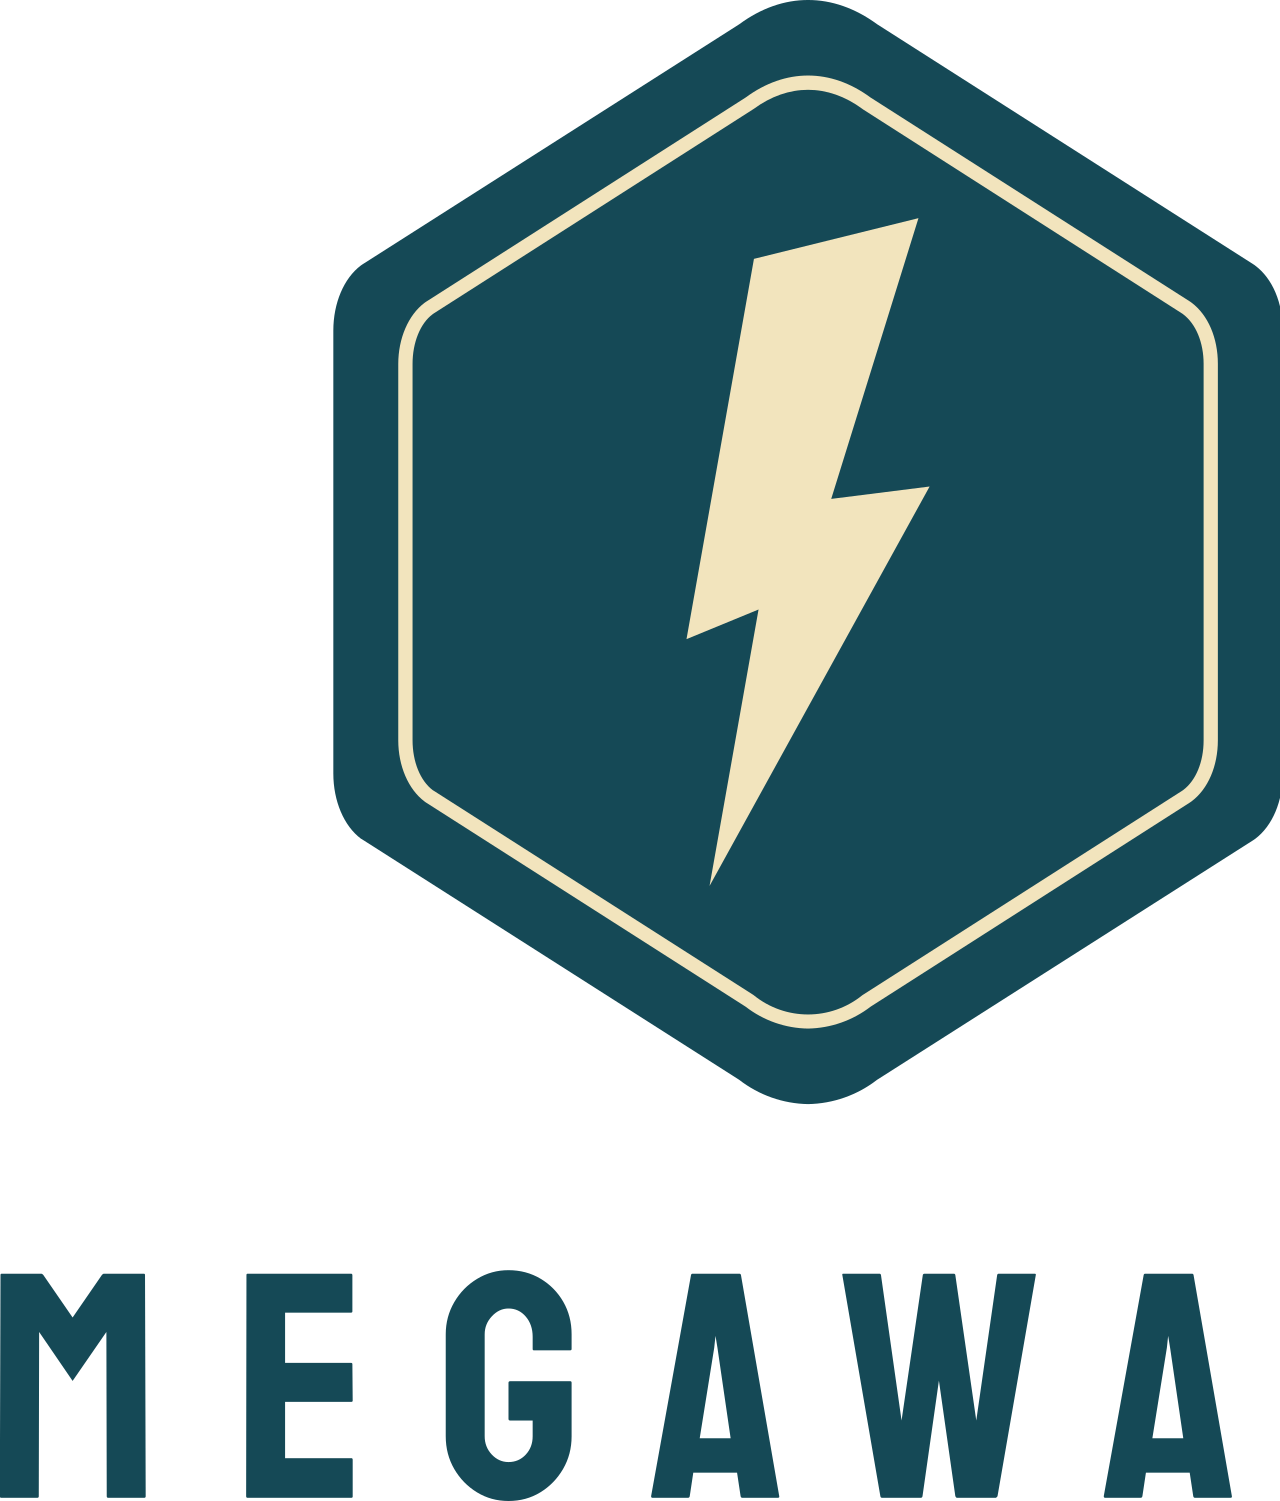 Megawatt's web page